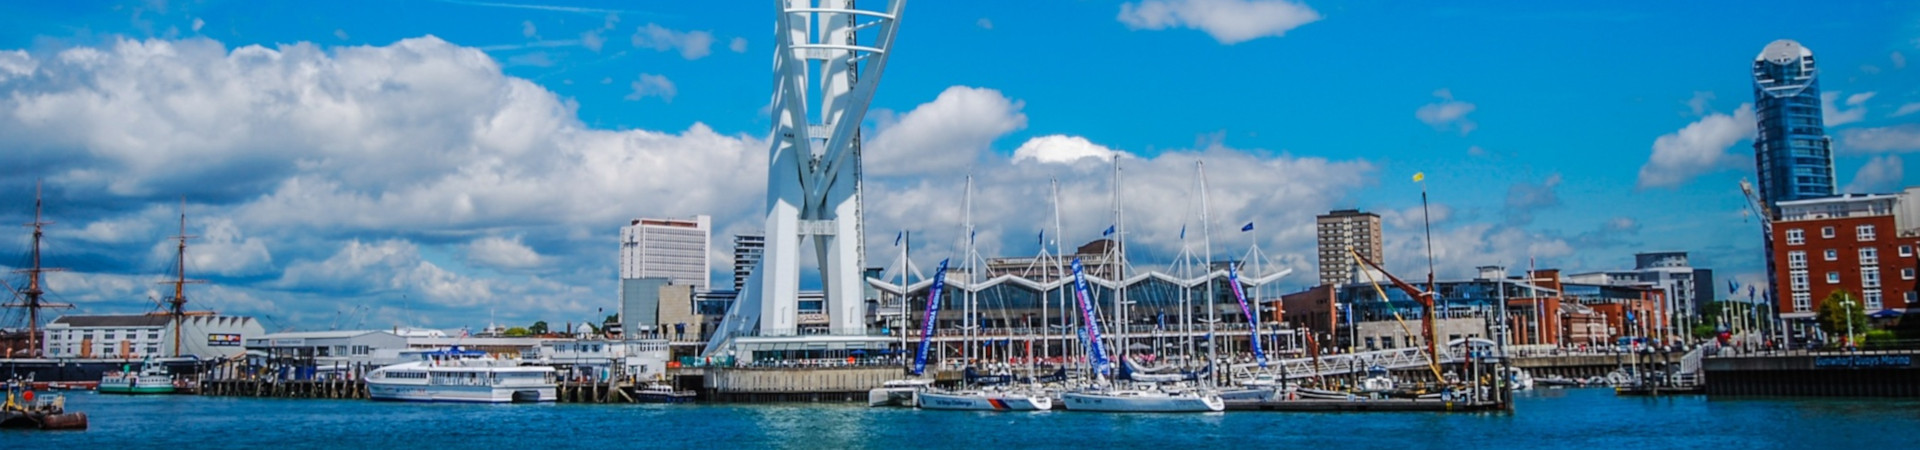 Image ressource du port de destination Portsmouth pour l'itinéraire du ferry Cherbourg-Octeville - Portsmouth